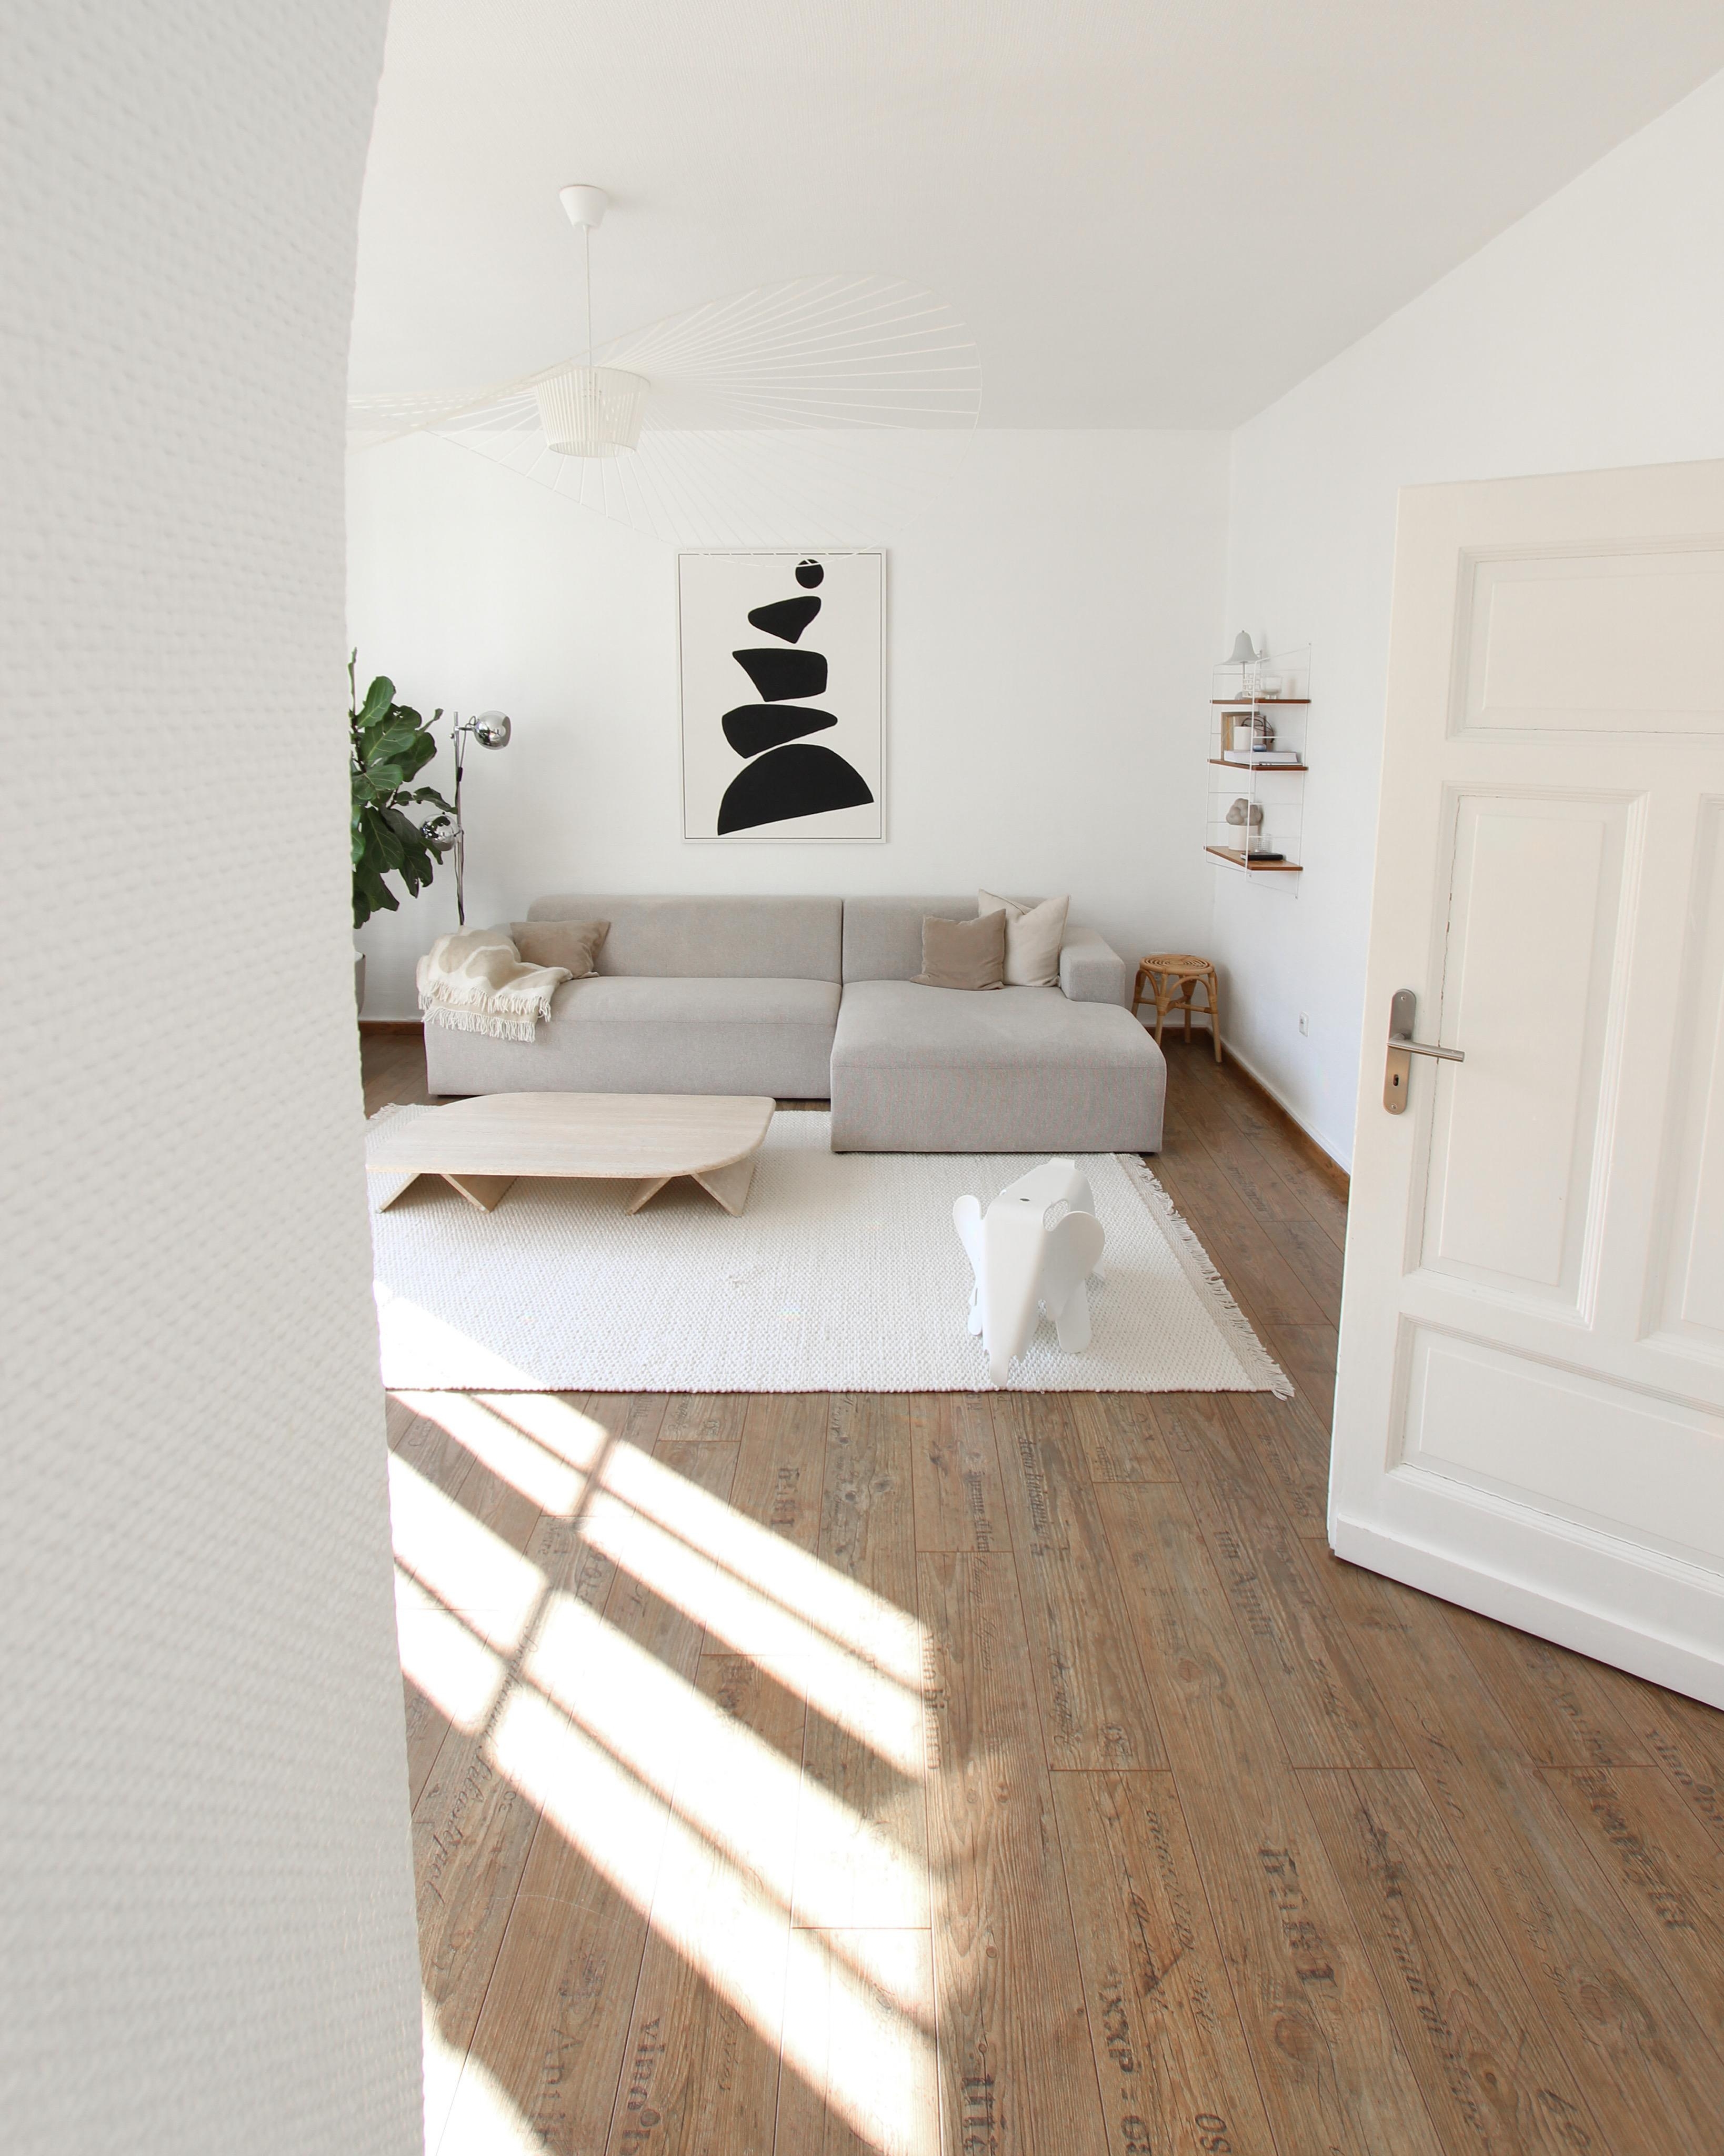 #wohnzimmer #livingroom #japandi #diybild #couch #minimalistisch #vitra #weisswohnen #altbauliebe #westerwald #interior